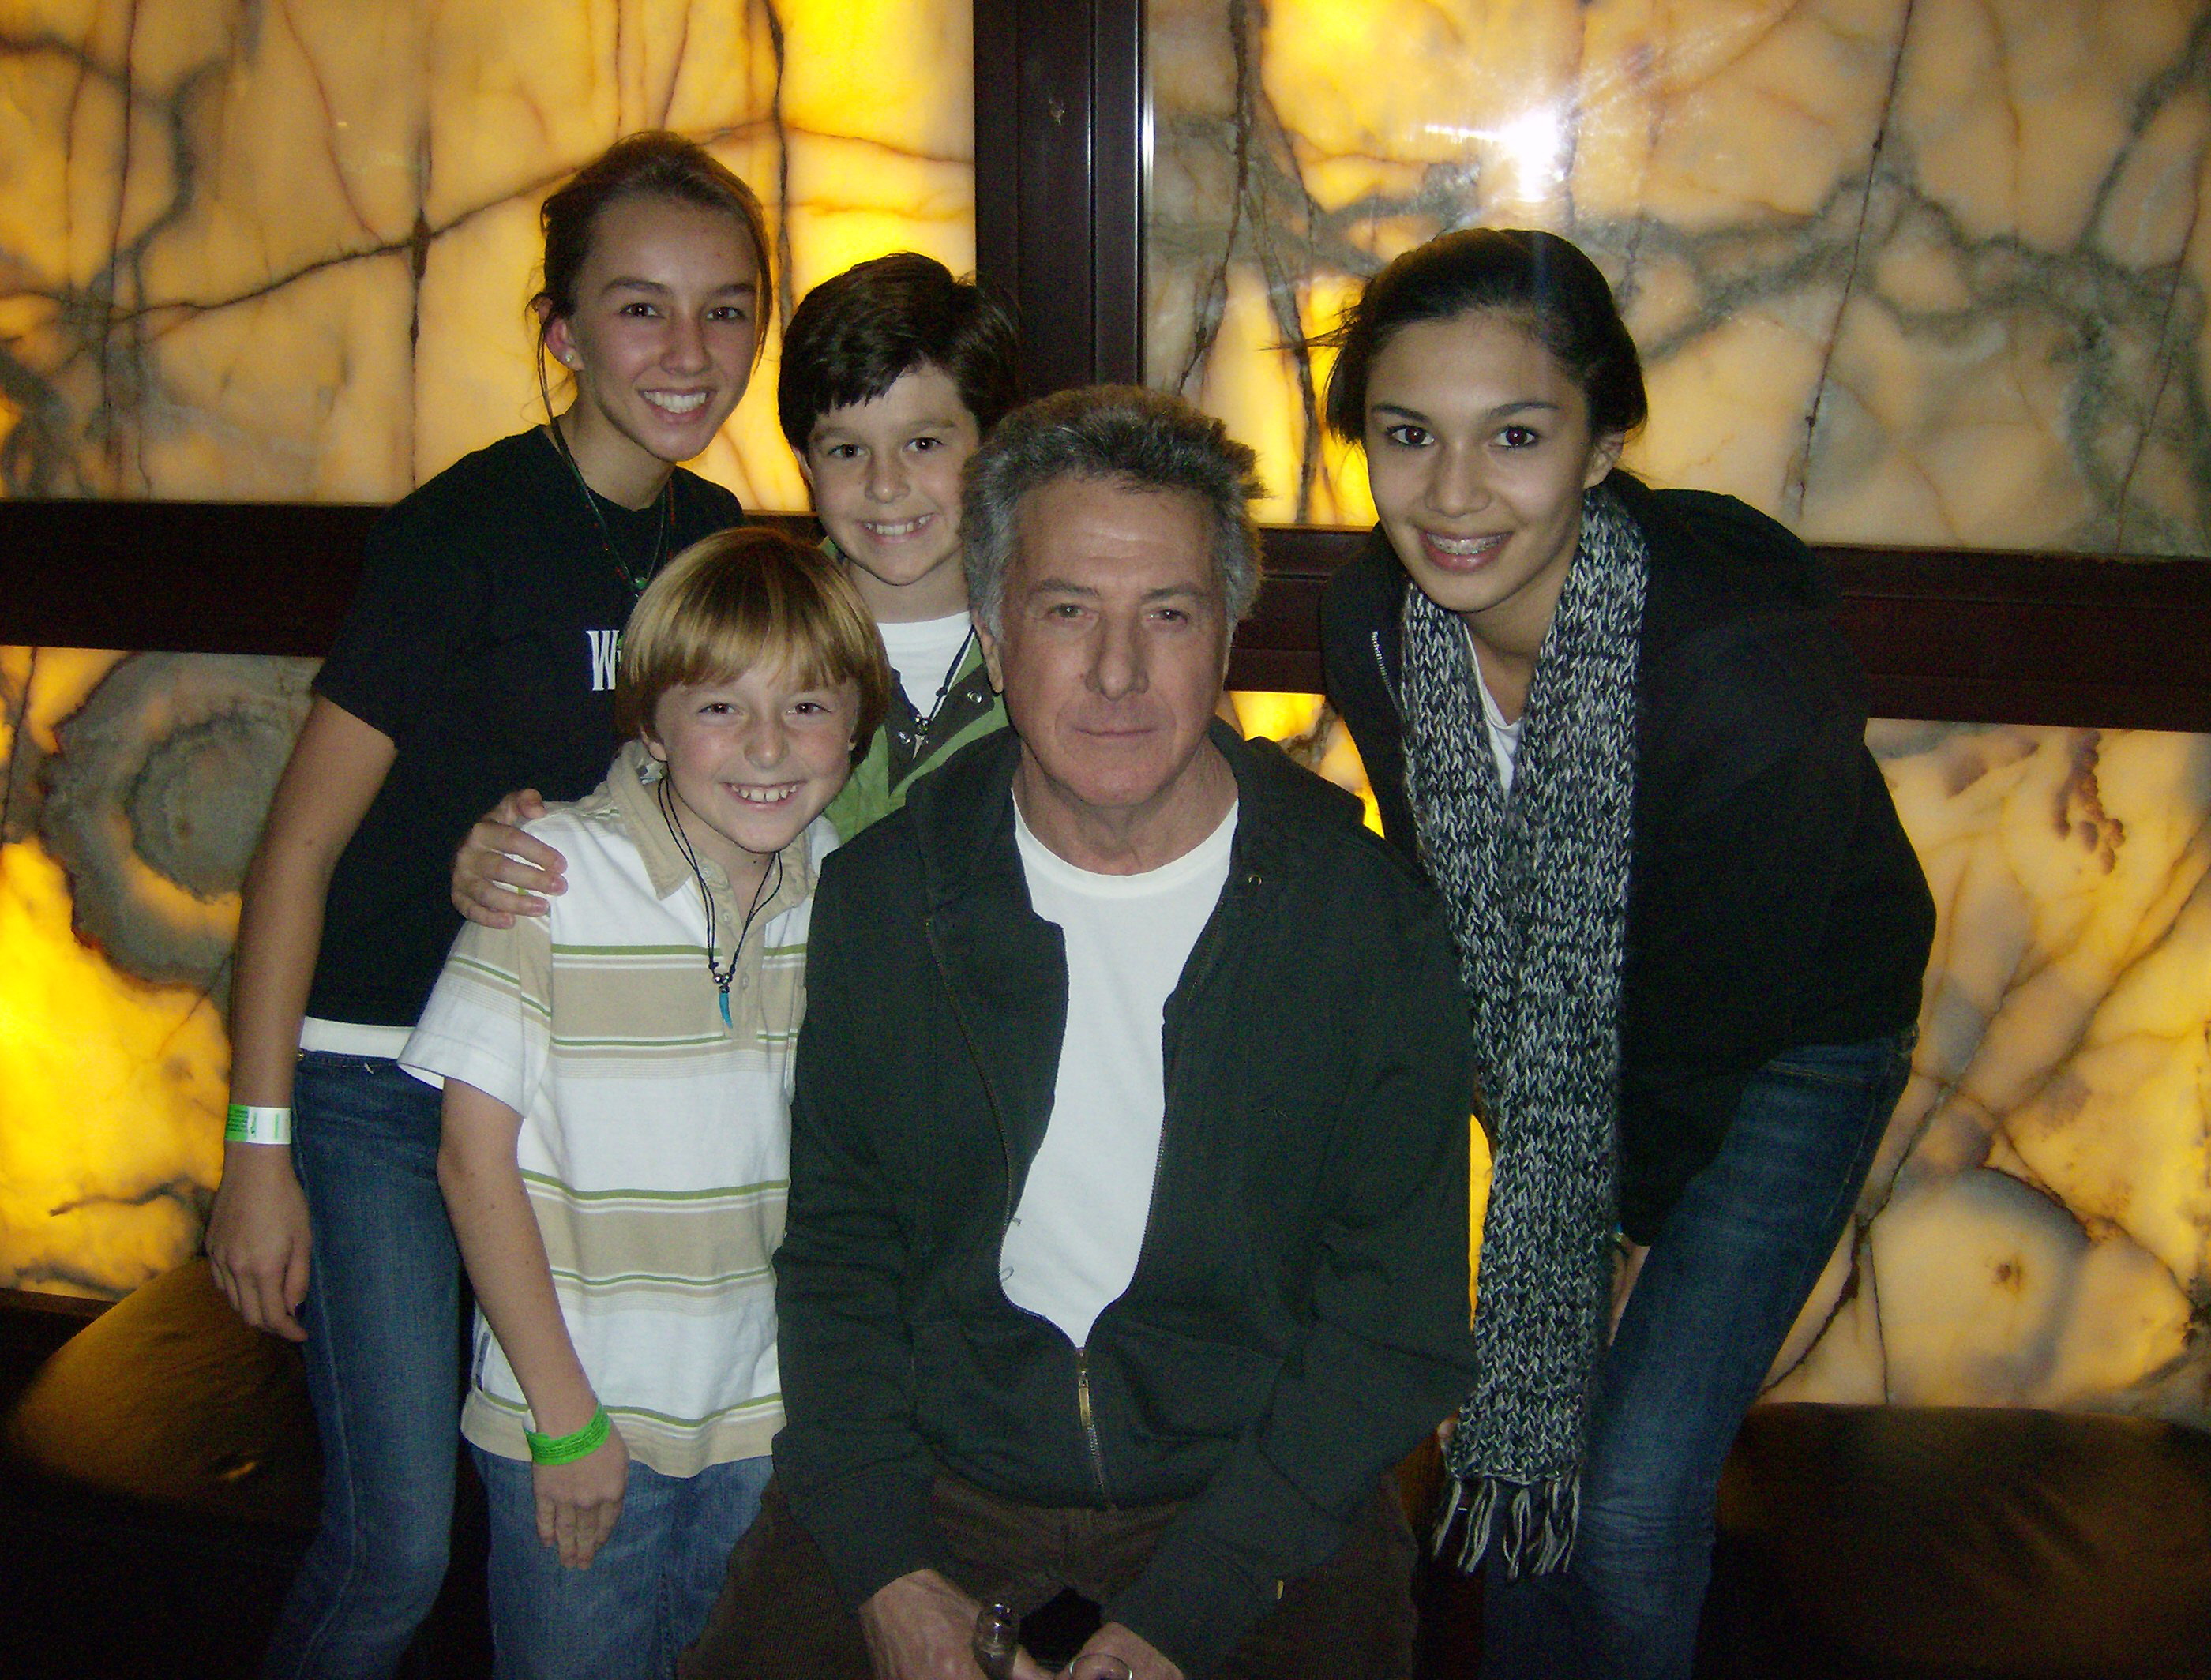 Lexi, Cameron & Aaron Sanders, Hannah Gabrielle with Dustin Hoffman